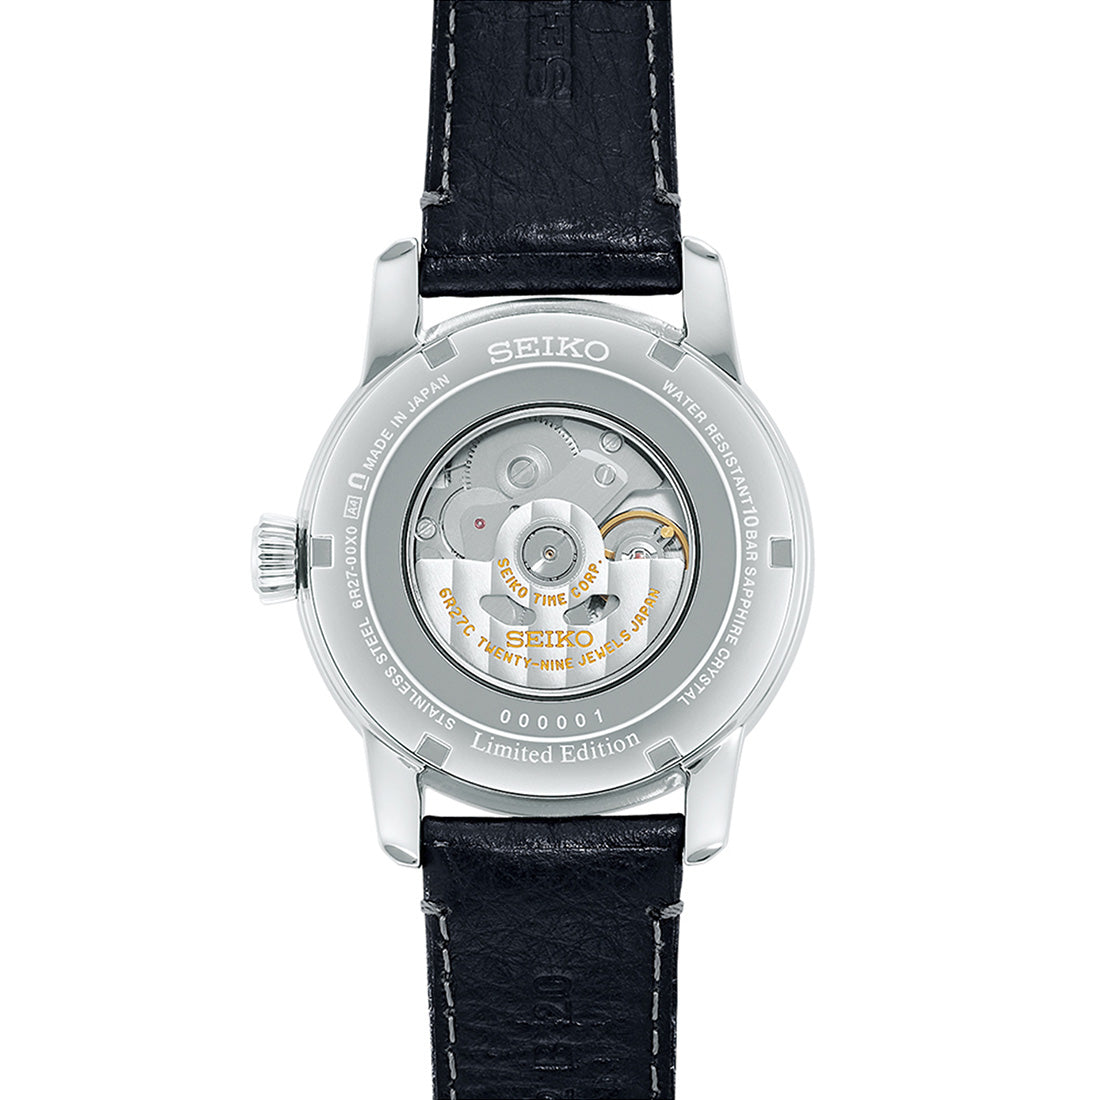 クラフツマンシップシリーズ 琺瑯ダイヤル セイコー腕時計110周年記念限定モデル